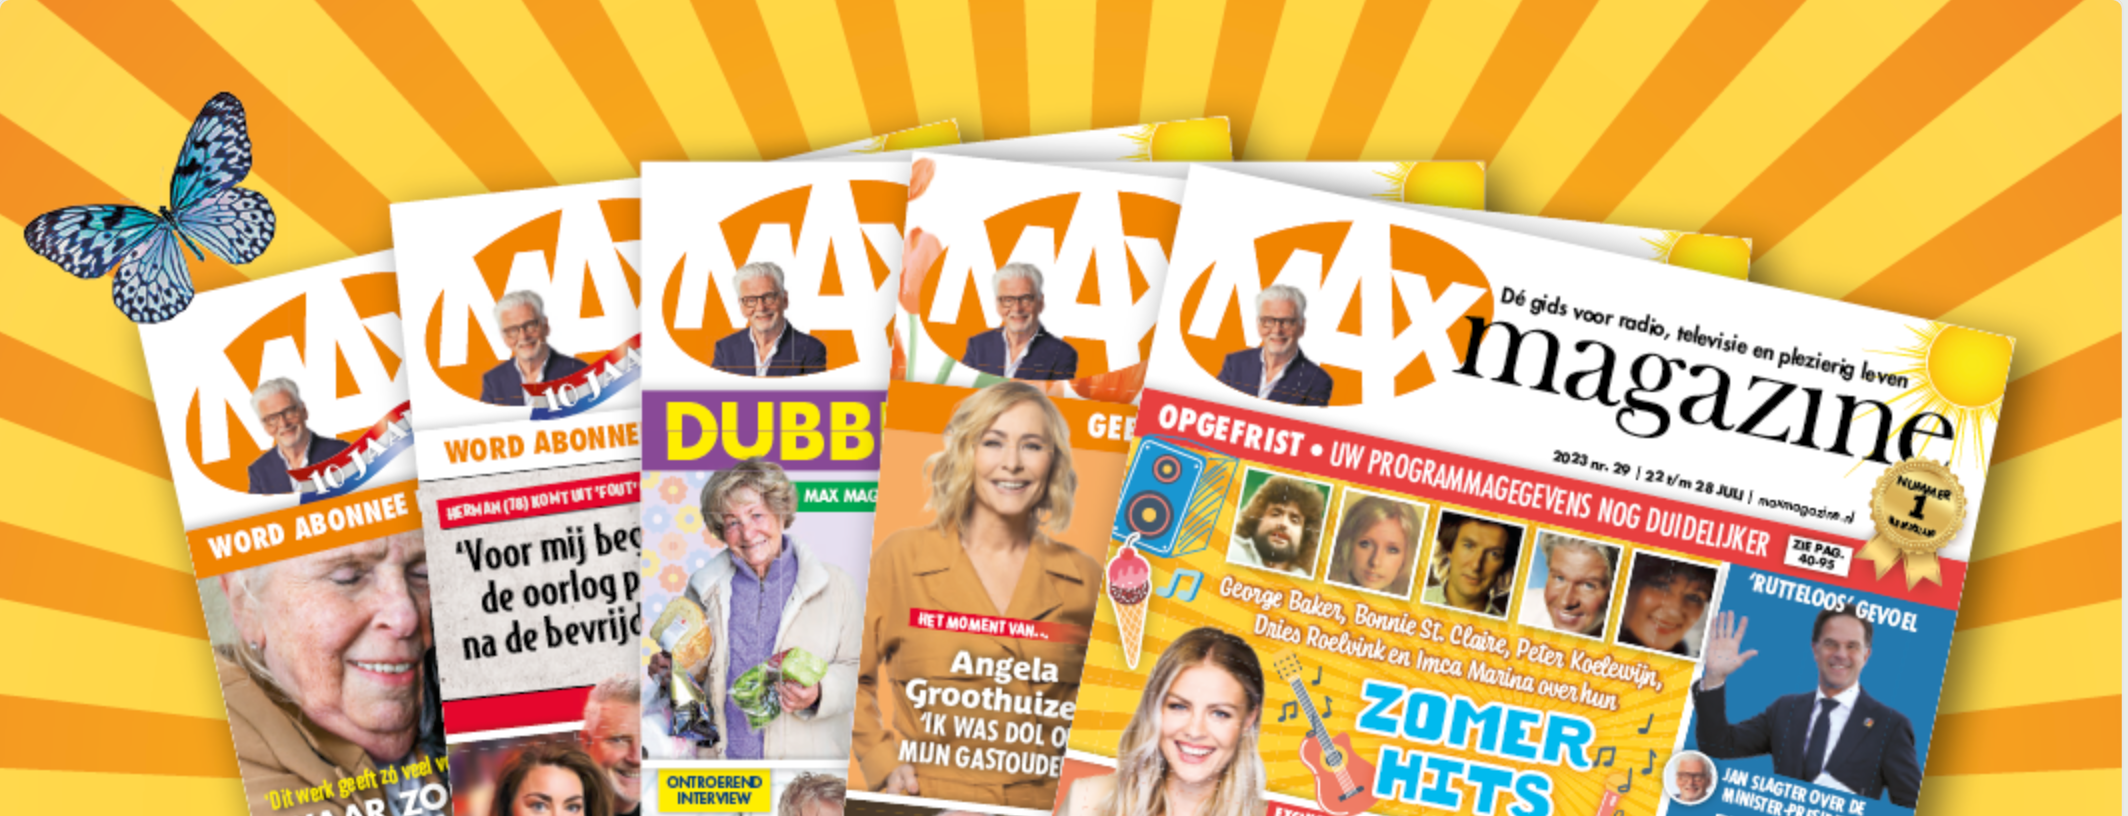 Max Magazine, Het grootste én gezelligste magazine van Nederland